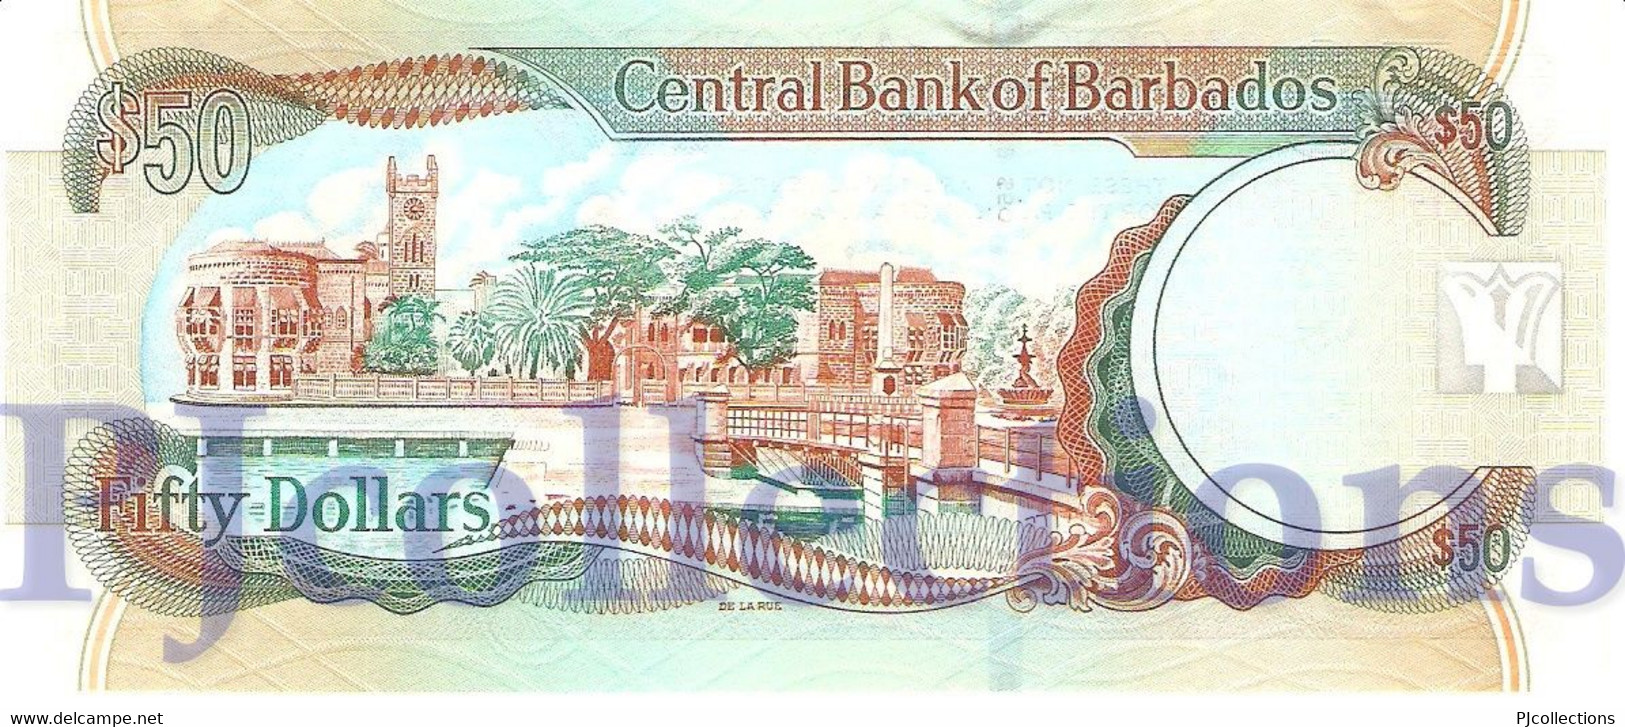 BARBADOS 50 DOLLARS 2007 PICK 70a UNC - Barbades